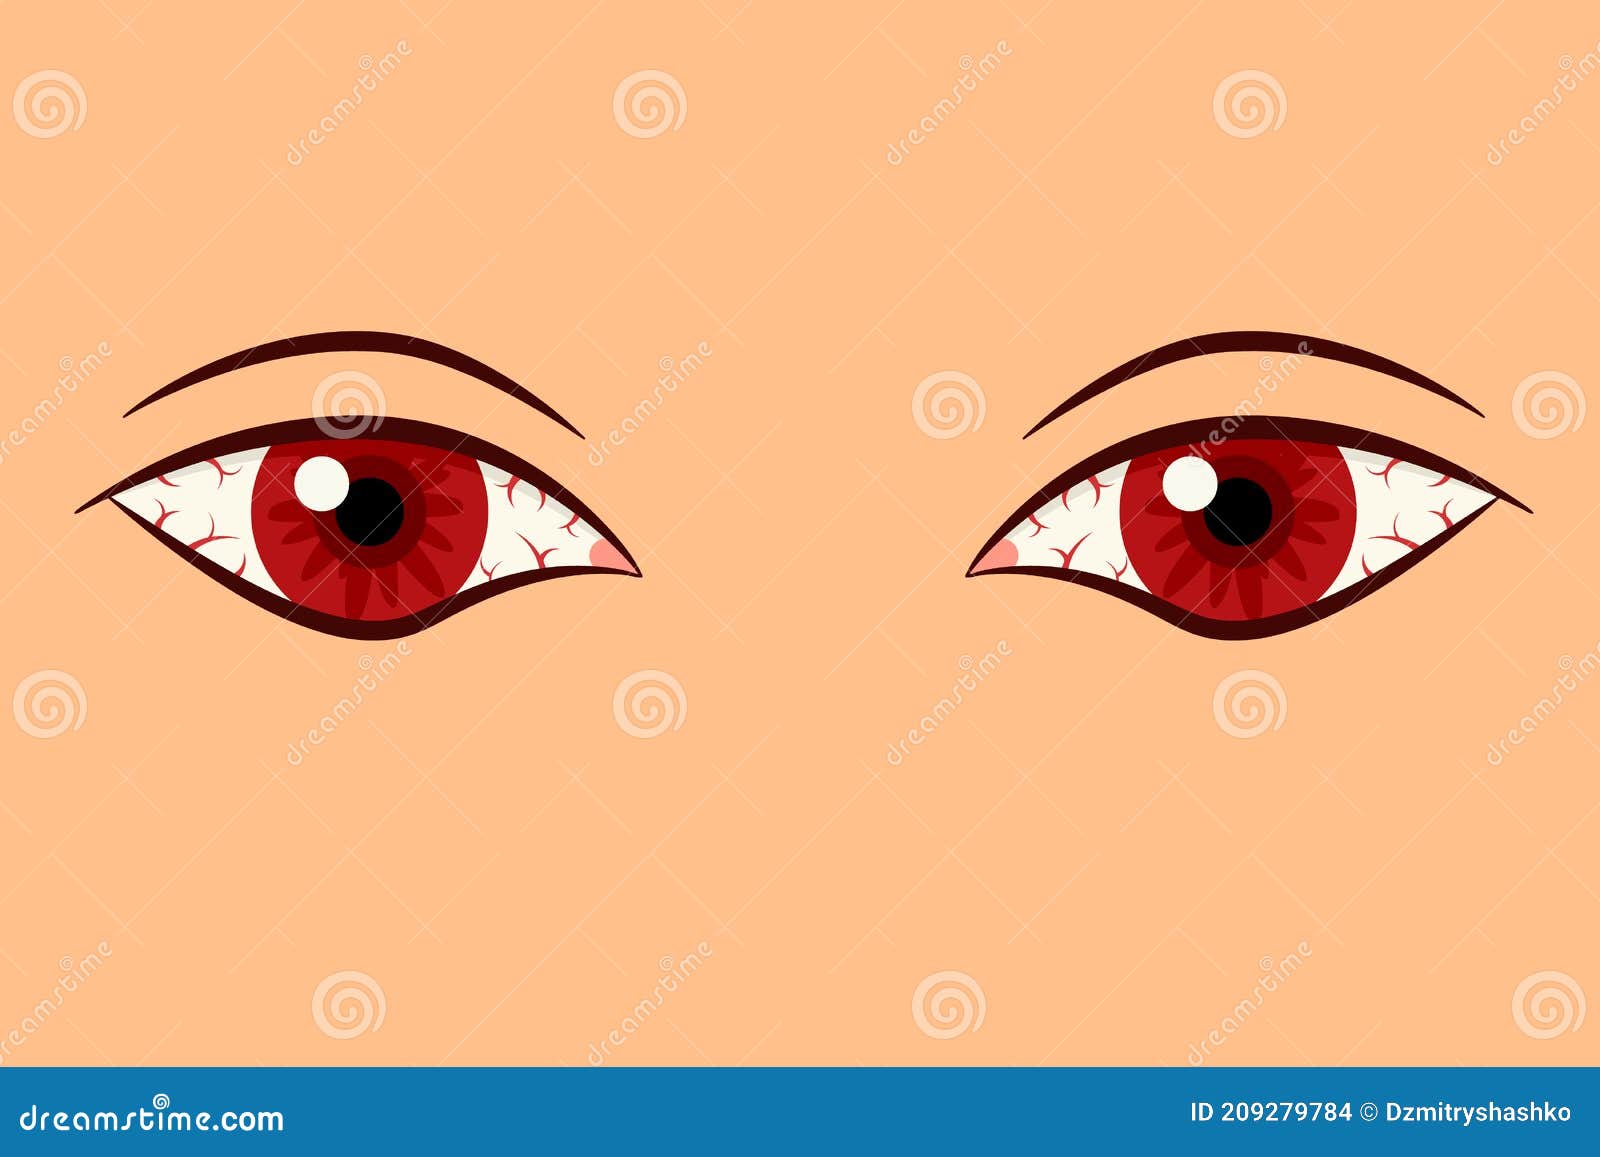 Featured image of post Bloodshot Eyes Vector Check out amazing bloodshoteyes artwork on deviantart